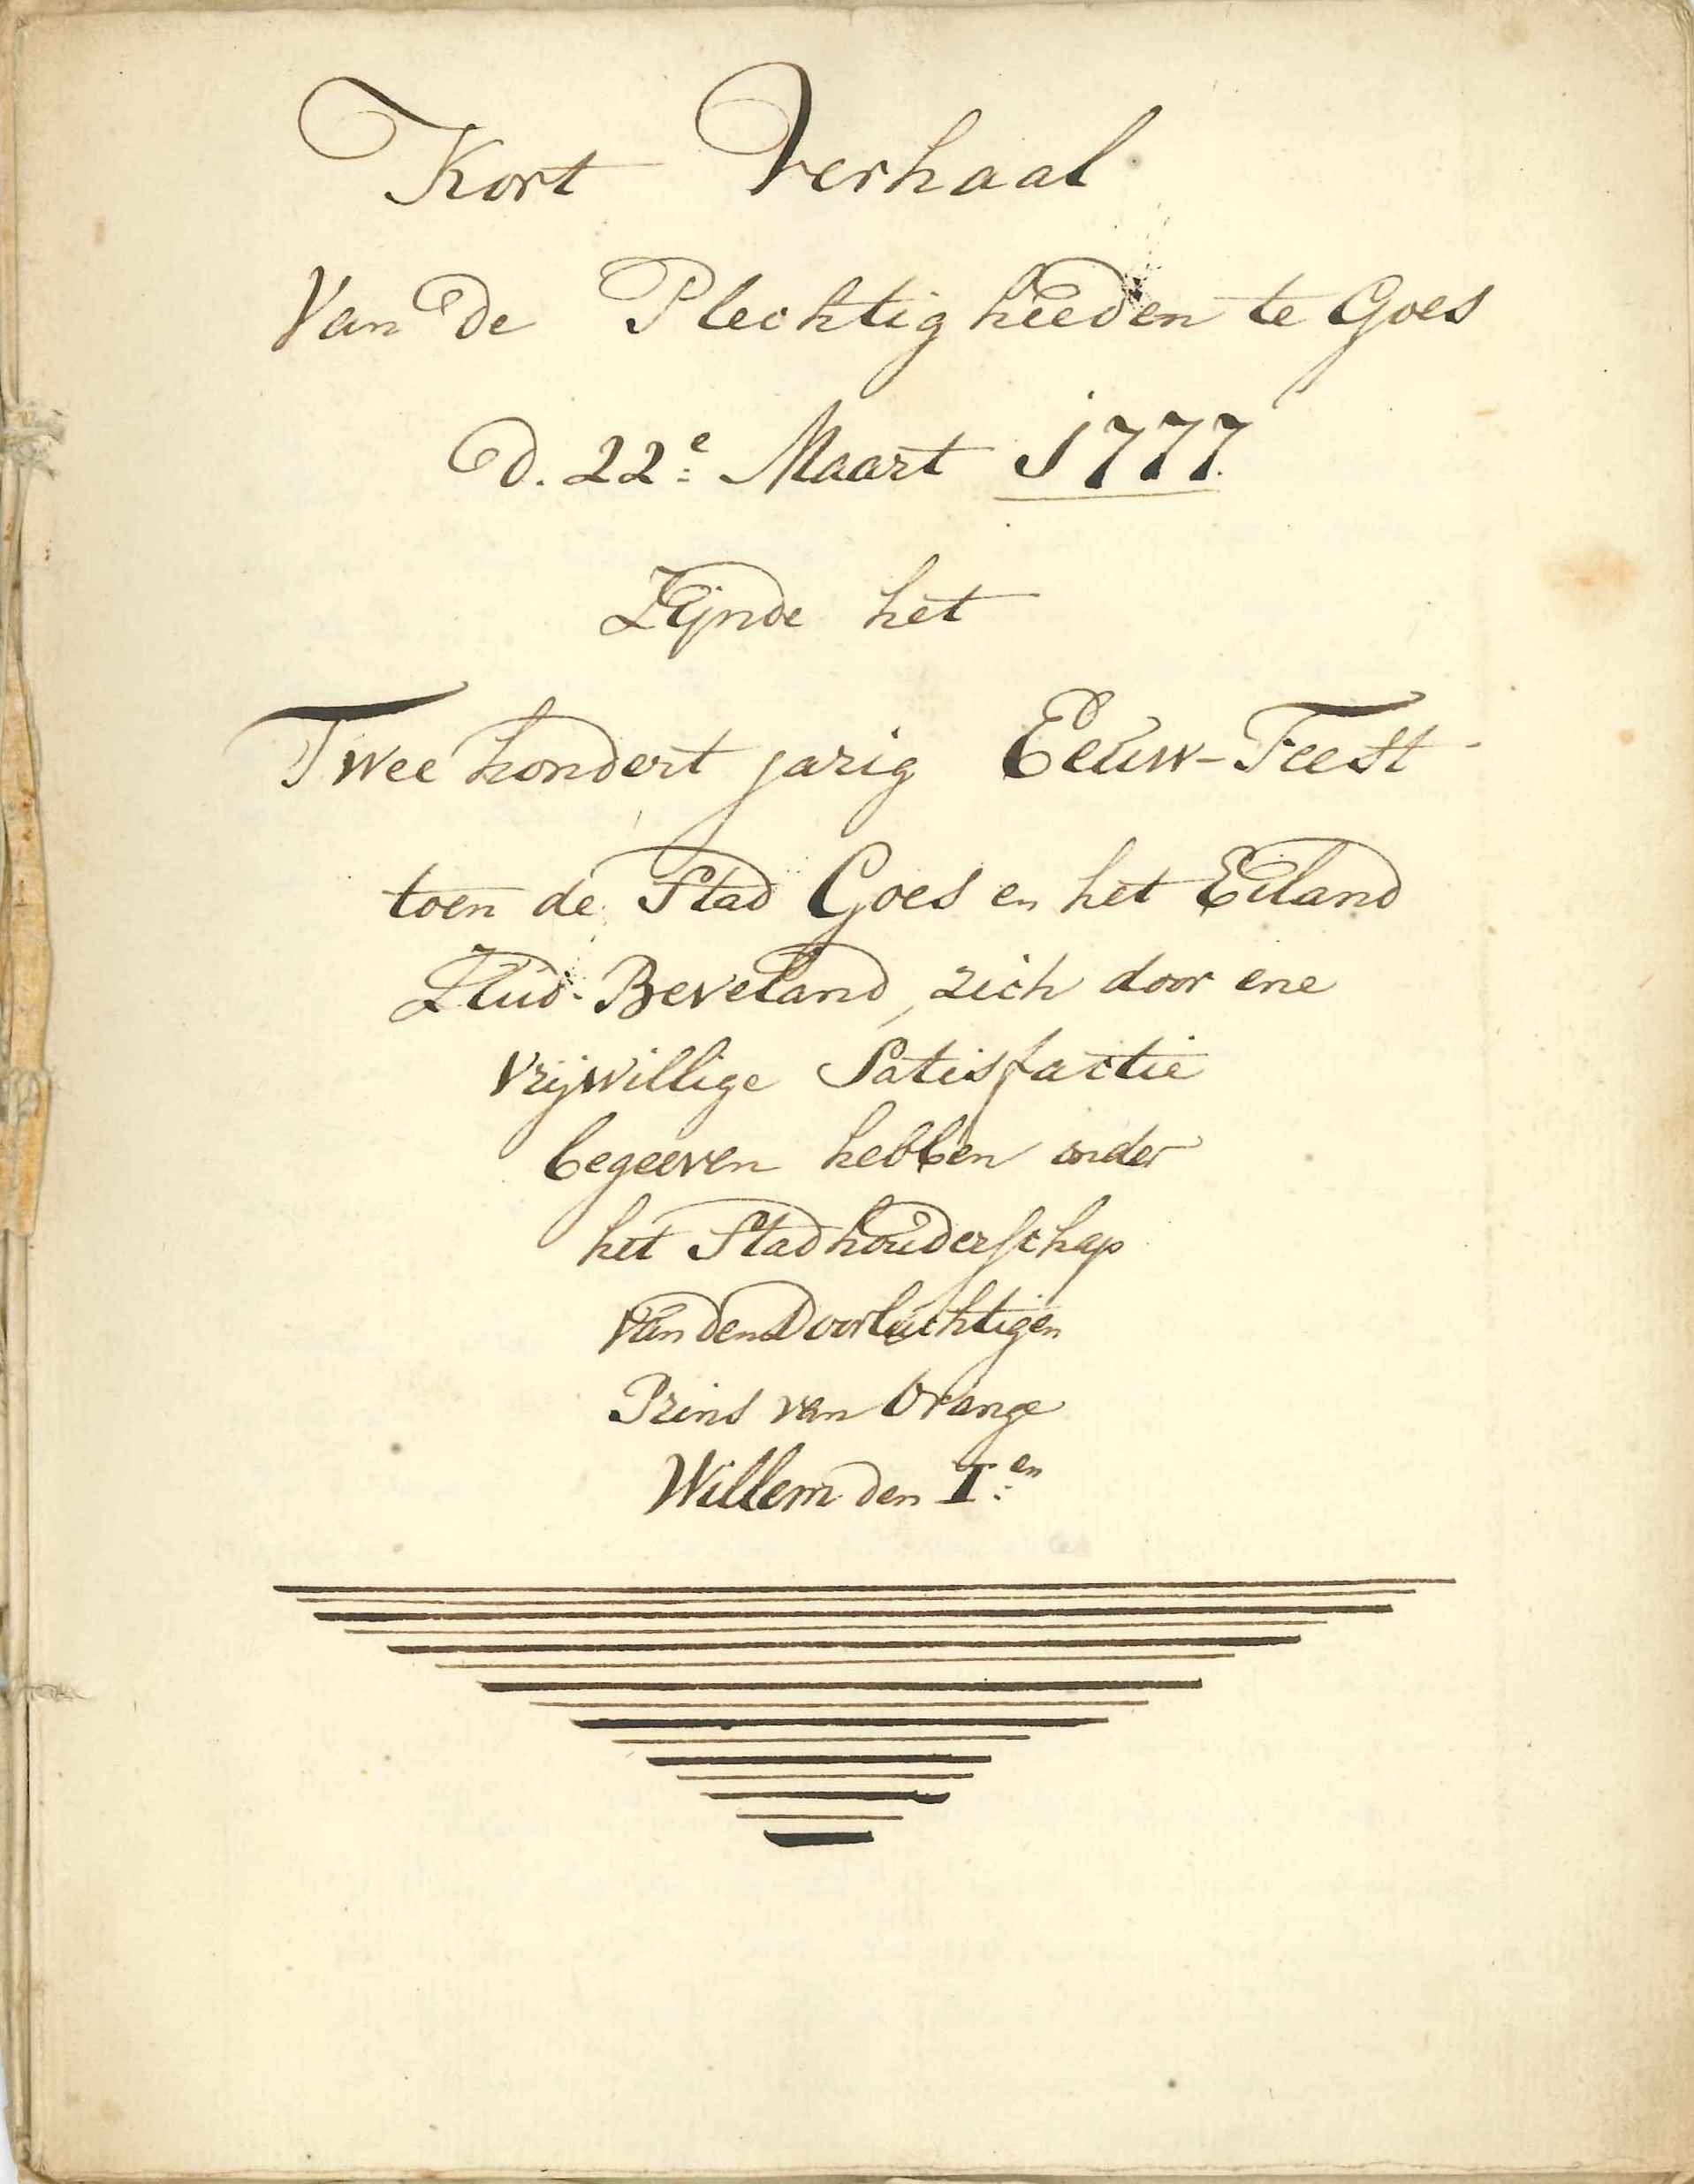 Titelblad van een overzicht van feestelijkheden in 1777.